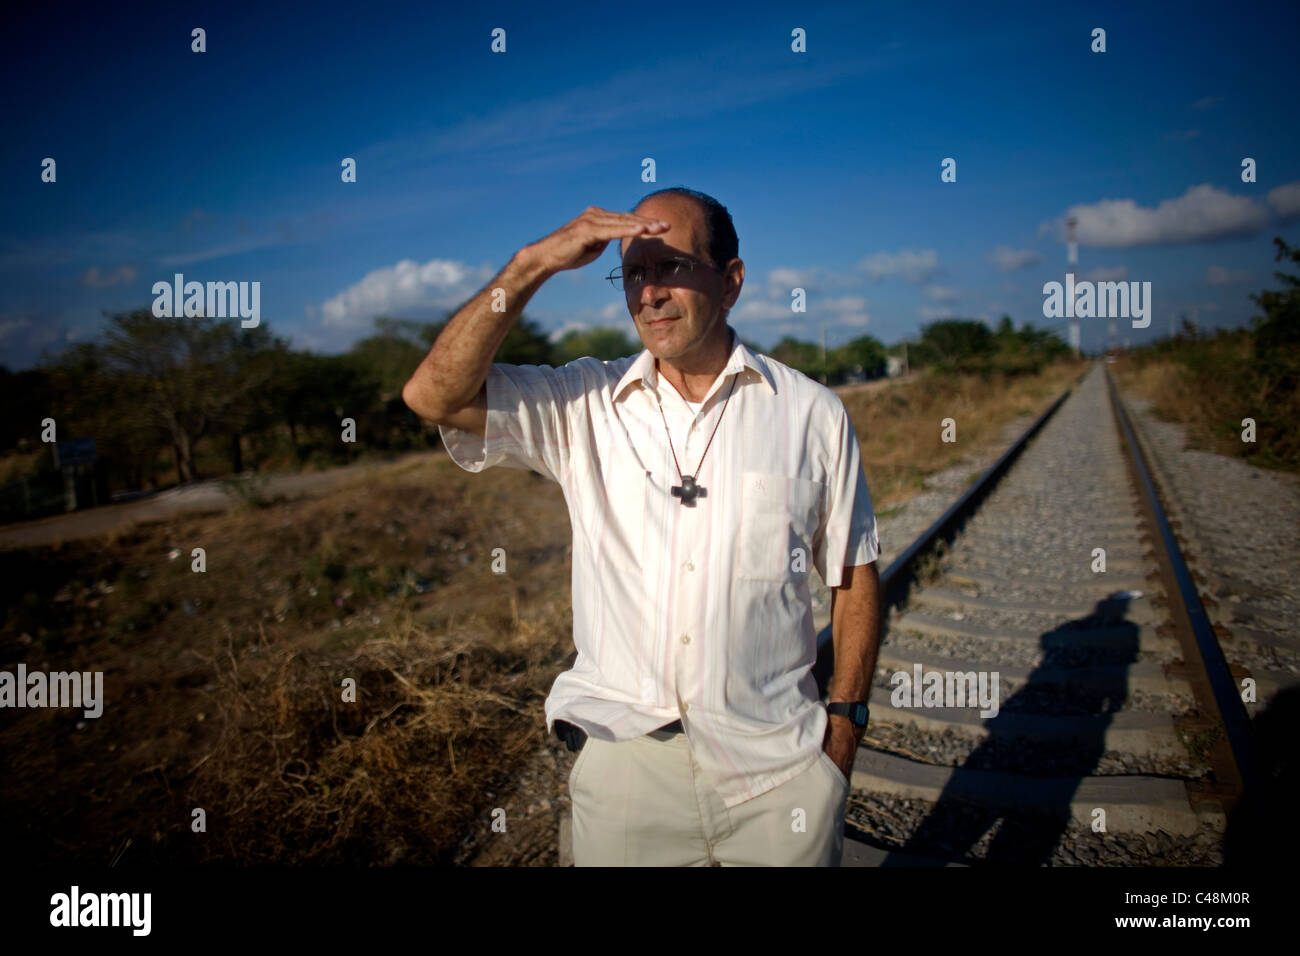 Prêtre catholique, Alejandro Solalinde couvre ses yeux avec sa main pendant qu'il marche le long du chemin de fer en Ixtepec, état de Oaxaca, Mexique Banque D'Images